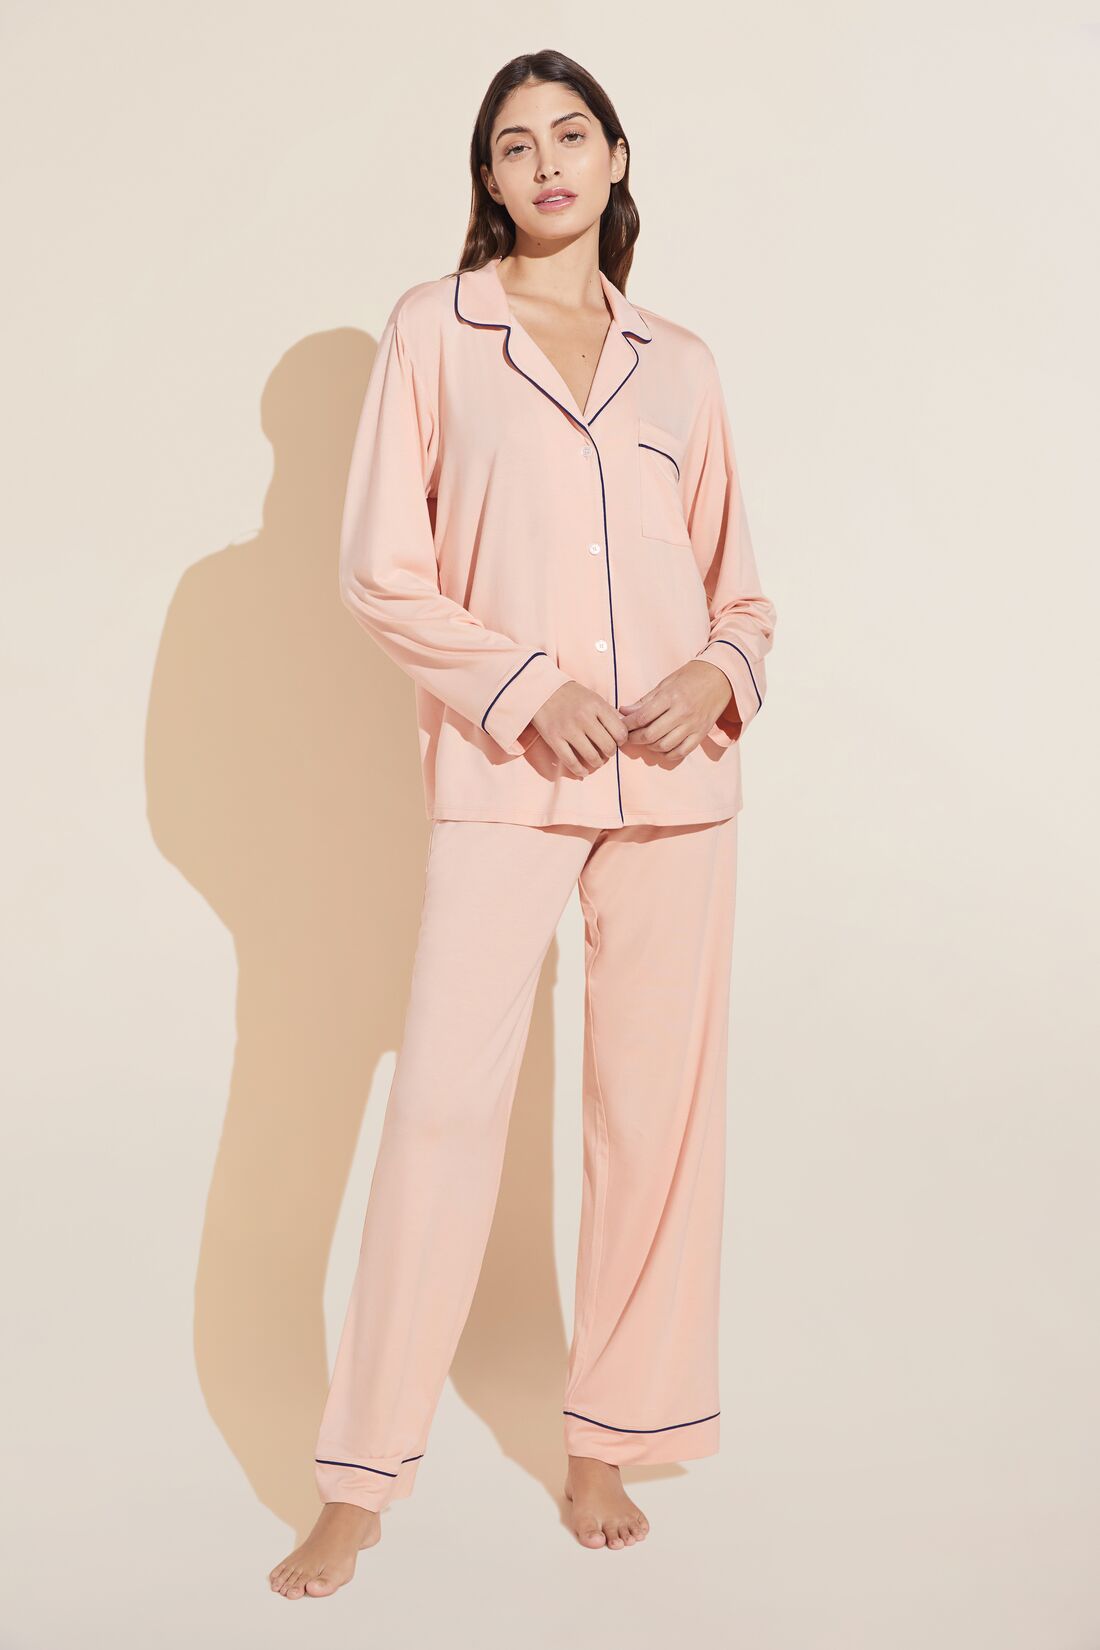 The Cloud 9 Pajama Set - Main  Most comfortable pajamas, Chic loungewear,  Pajama set